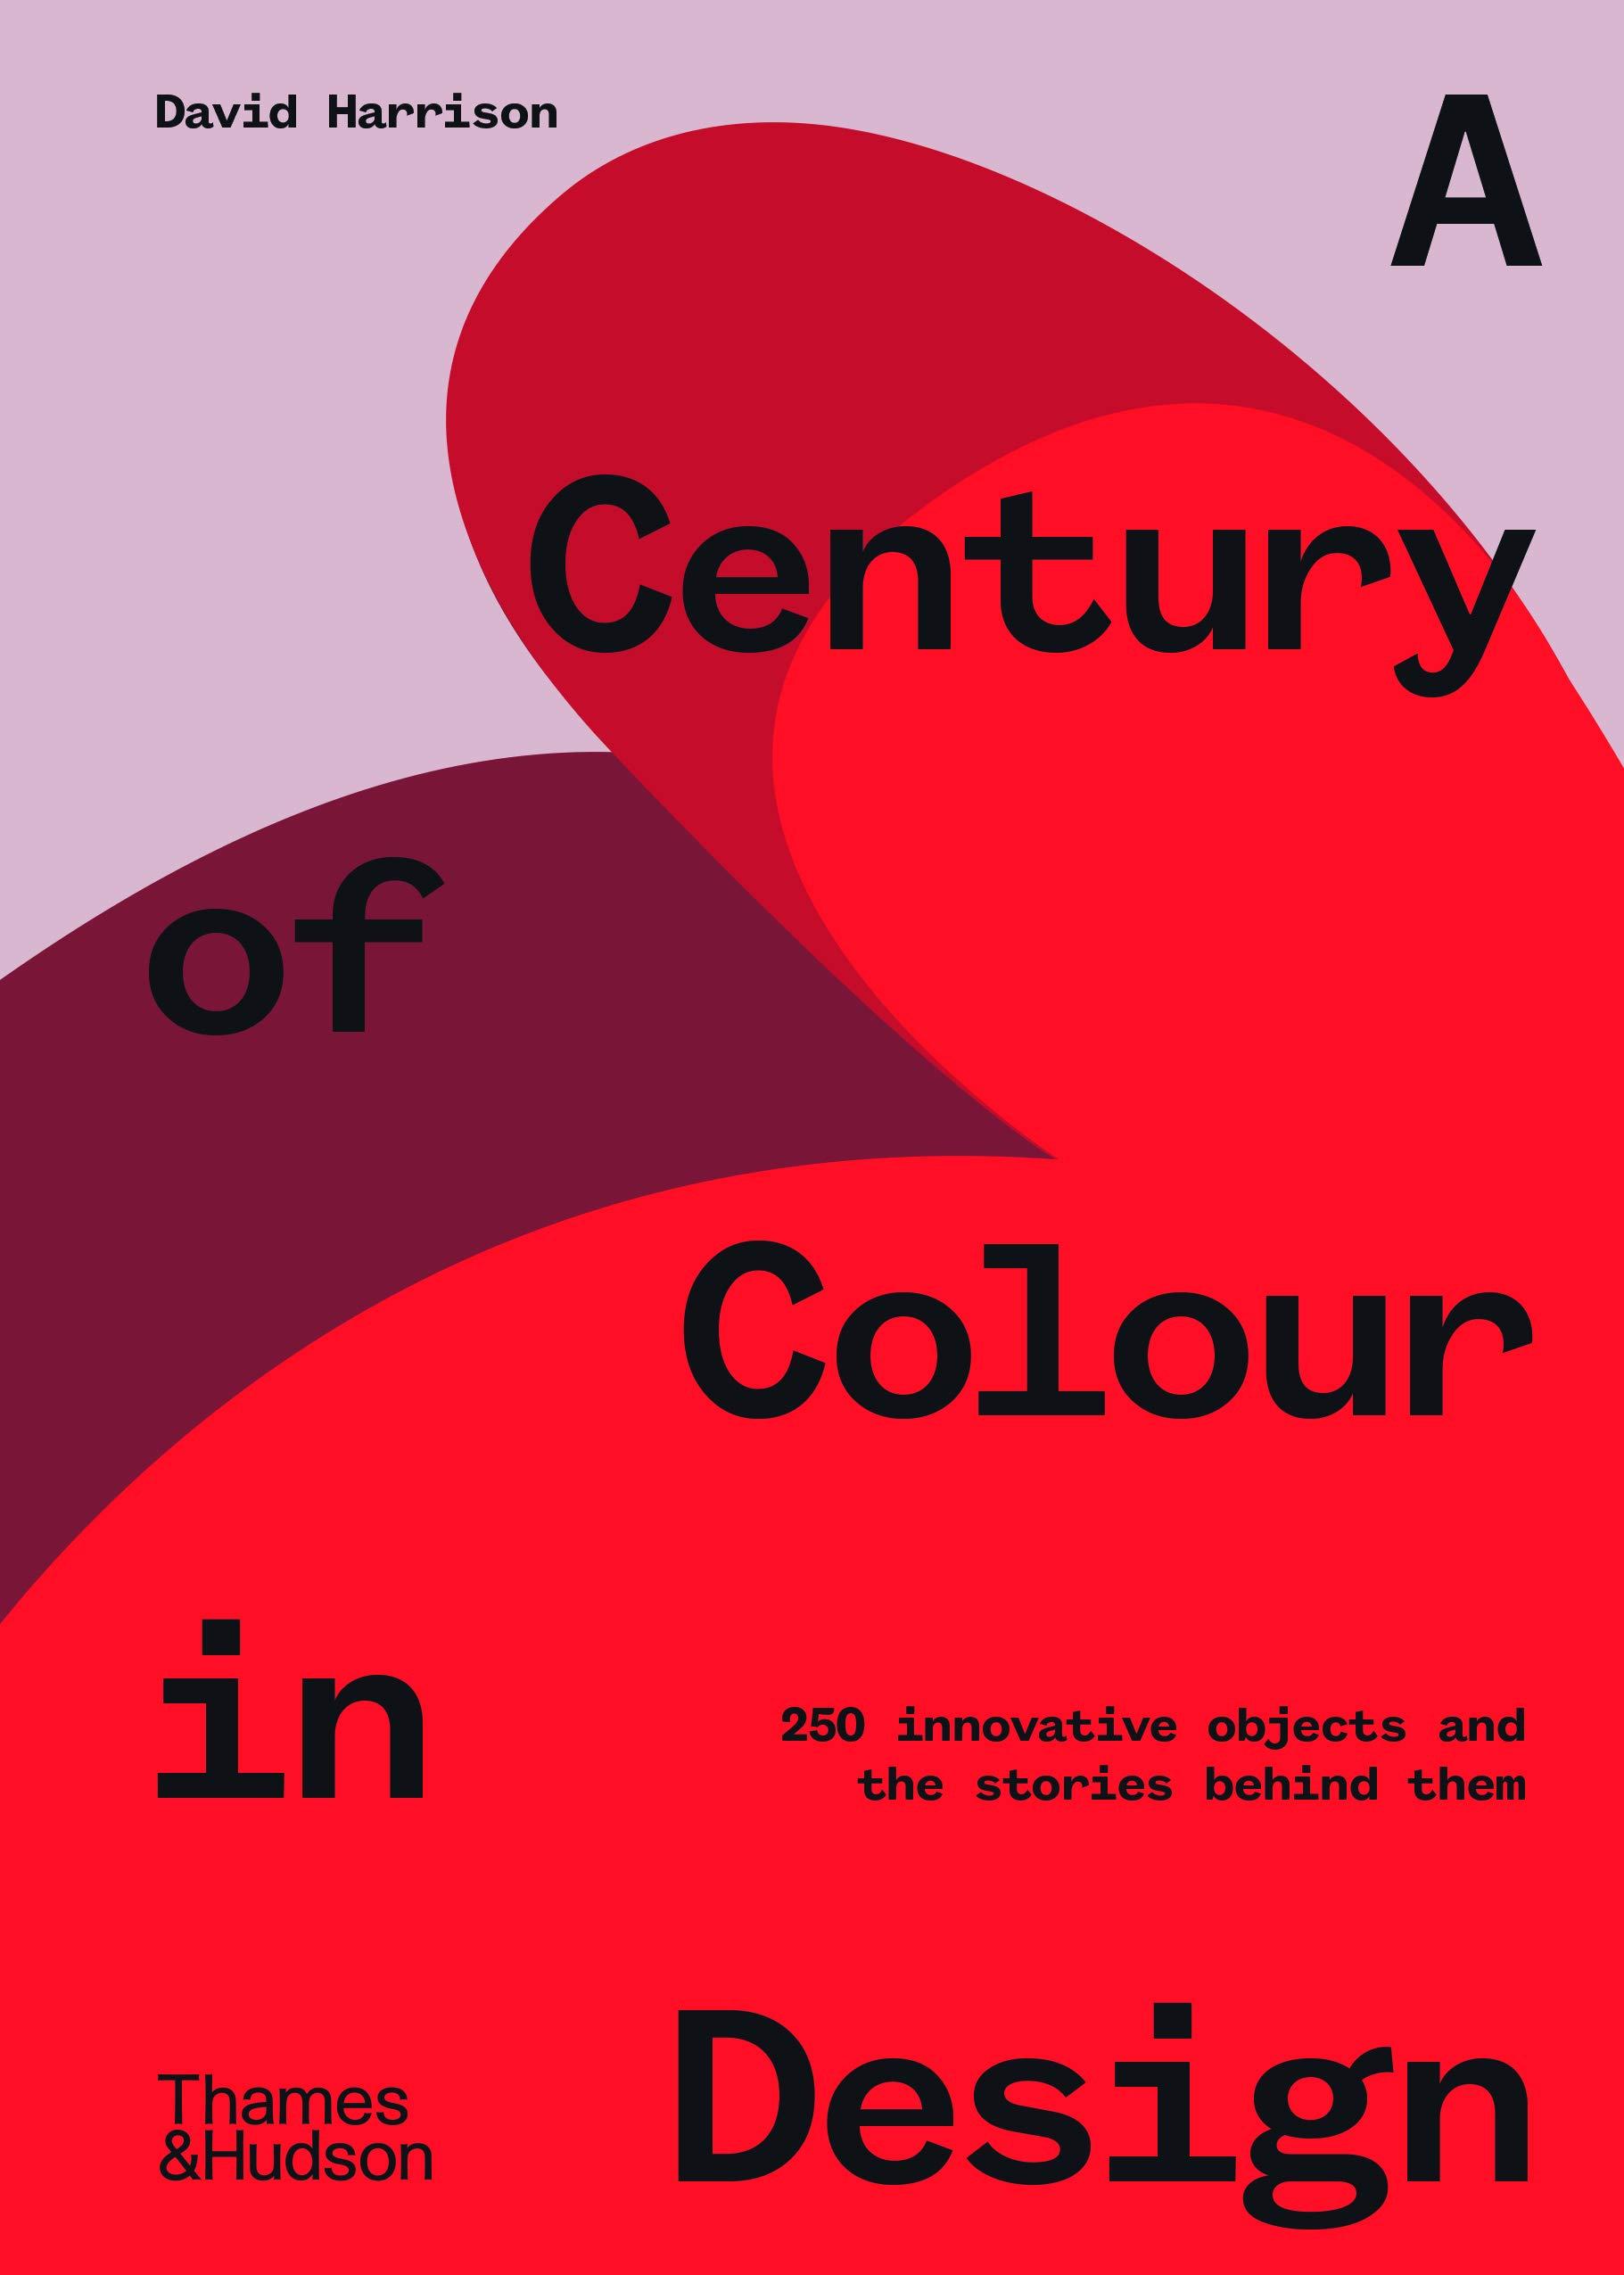 Century of Colour in Design